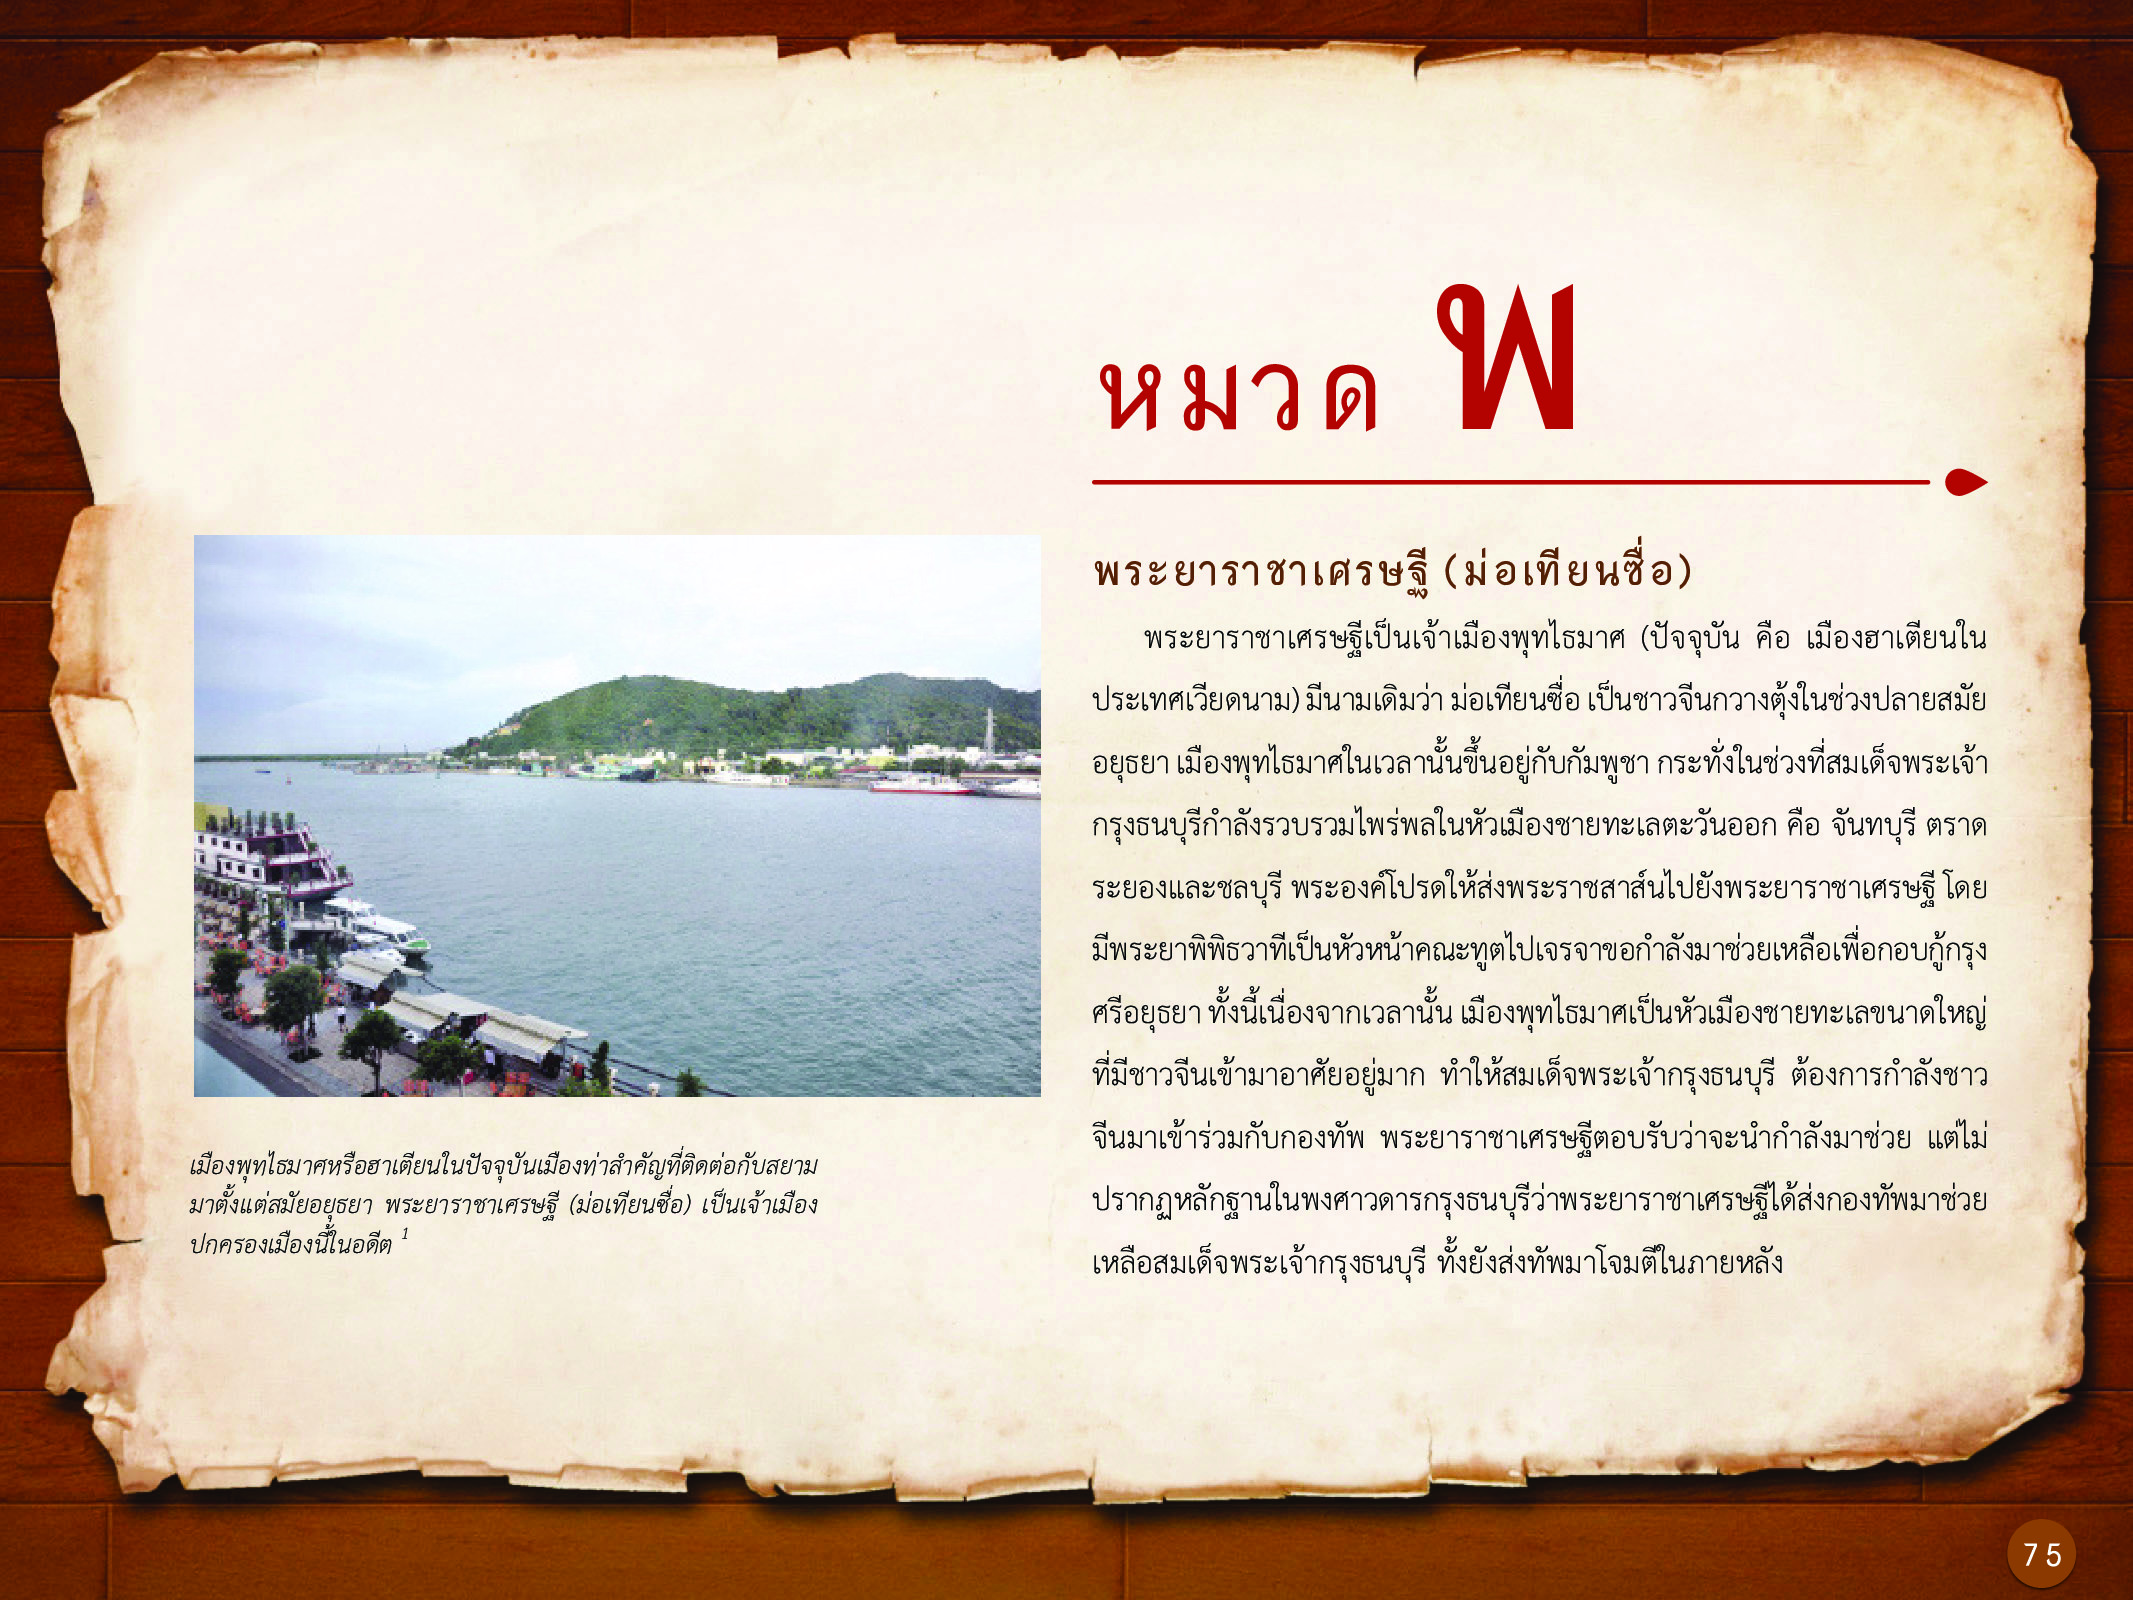 ประวัติศาสตร์กรุงธนบุรี ./images/history_dhonburi/75.jpg